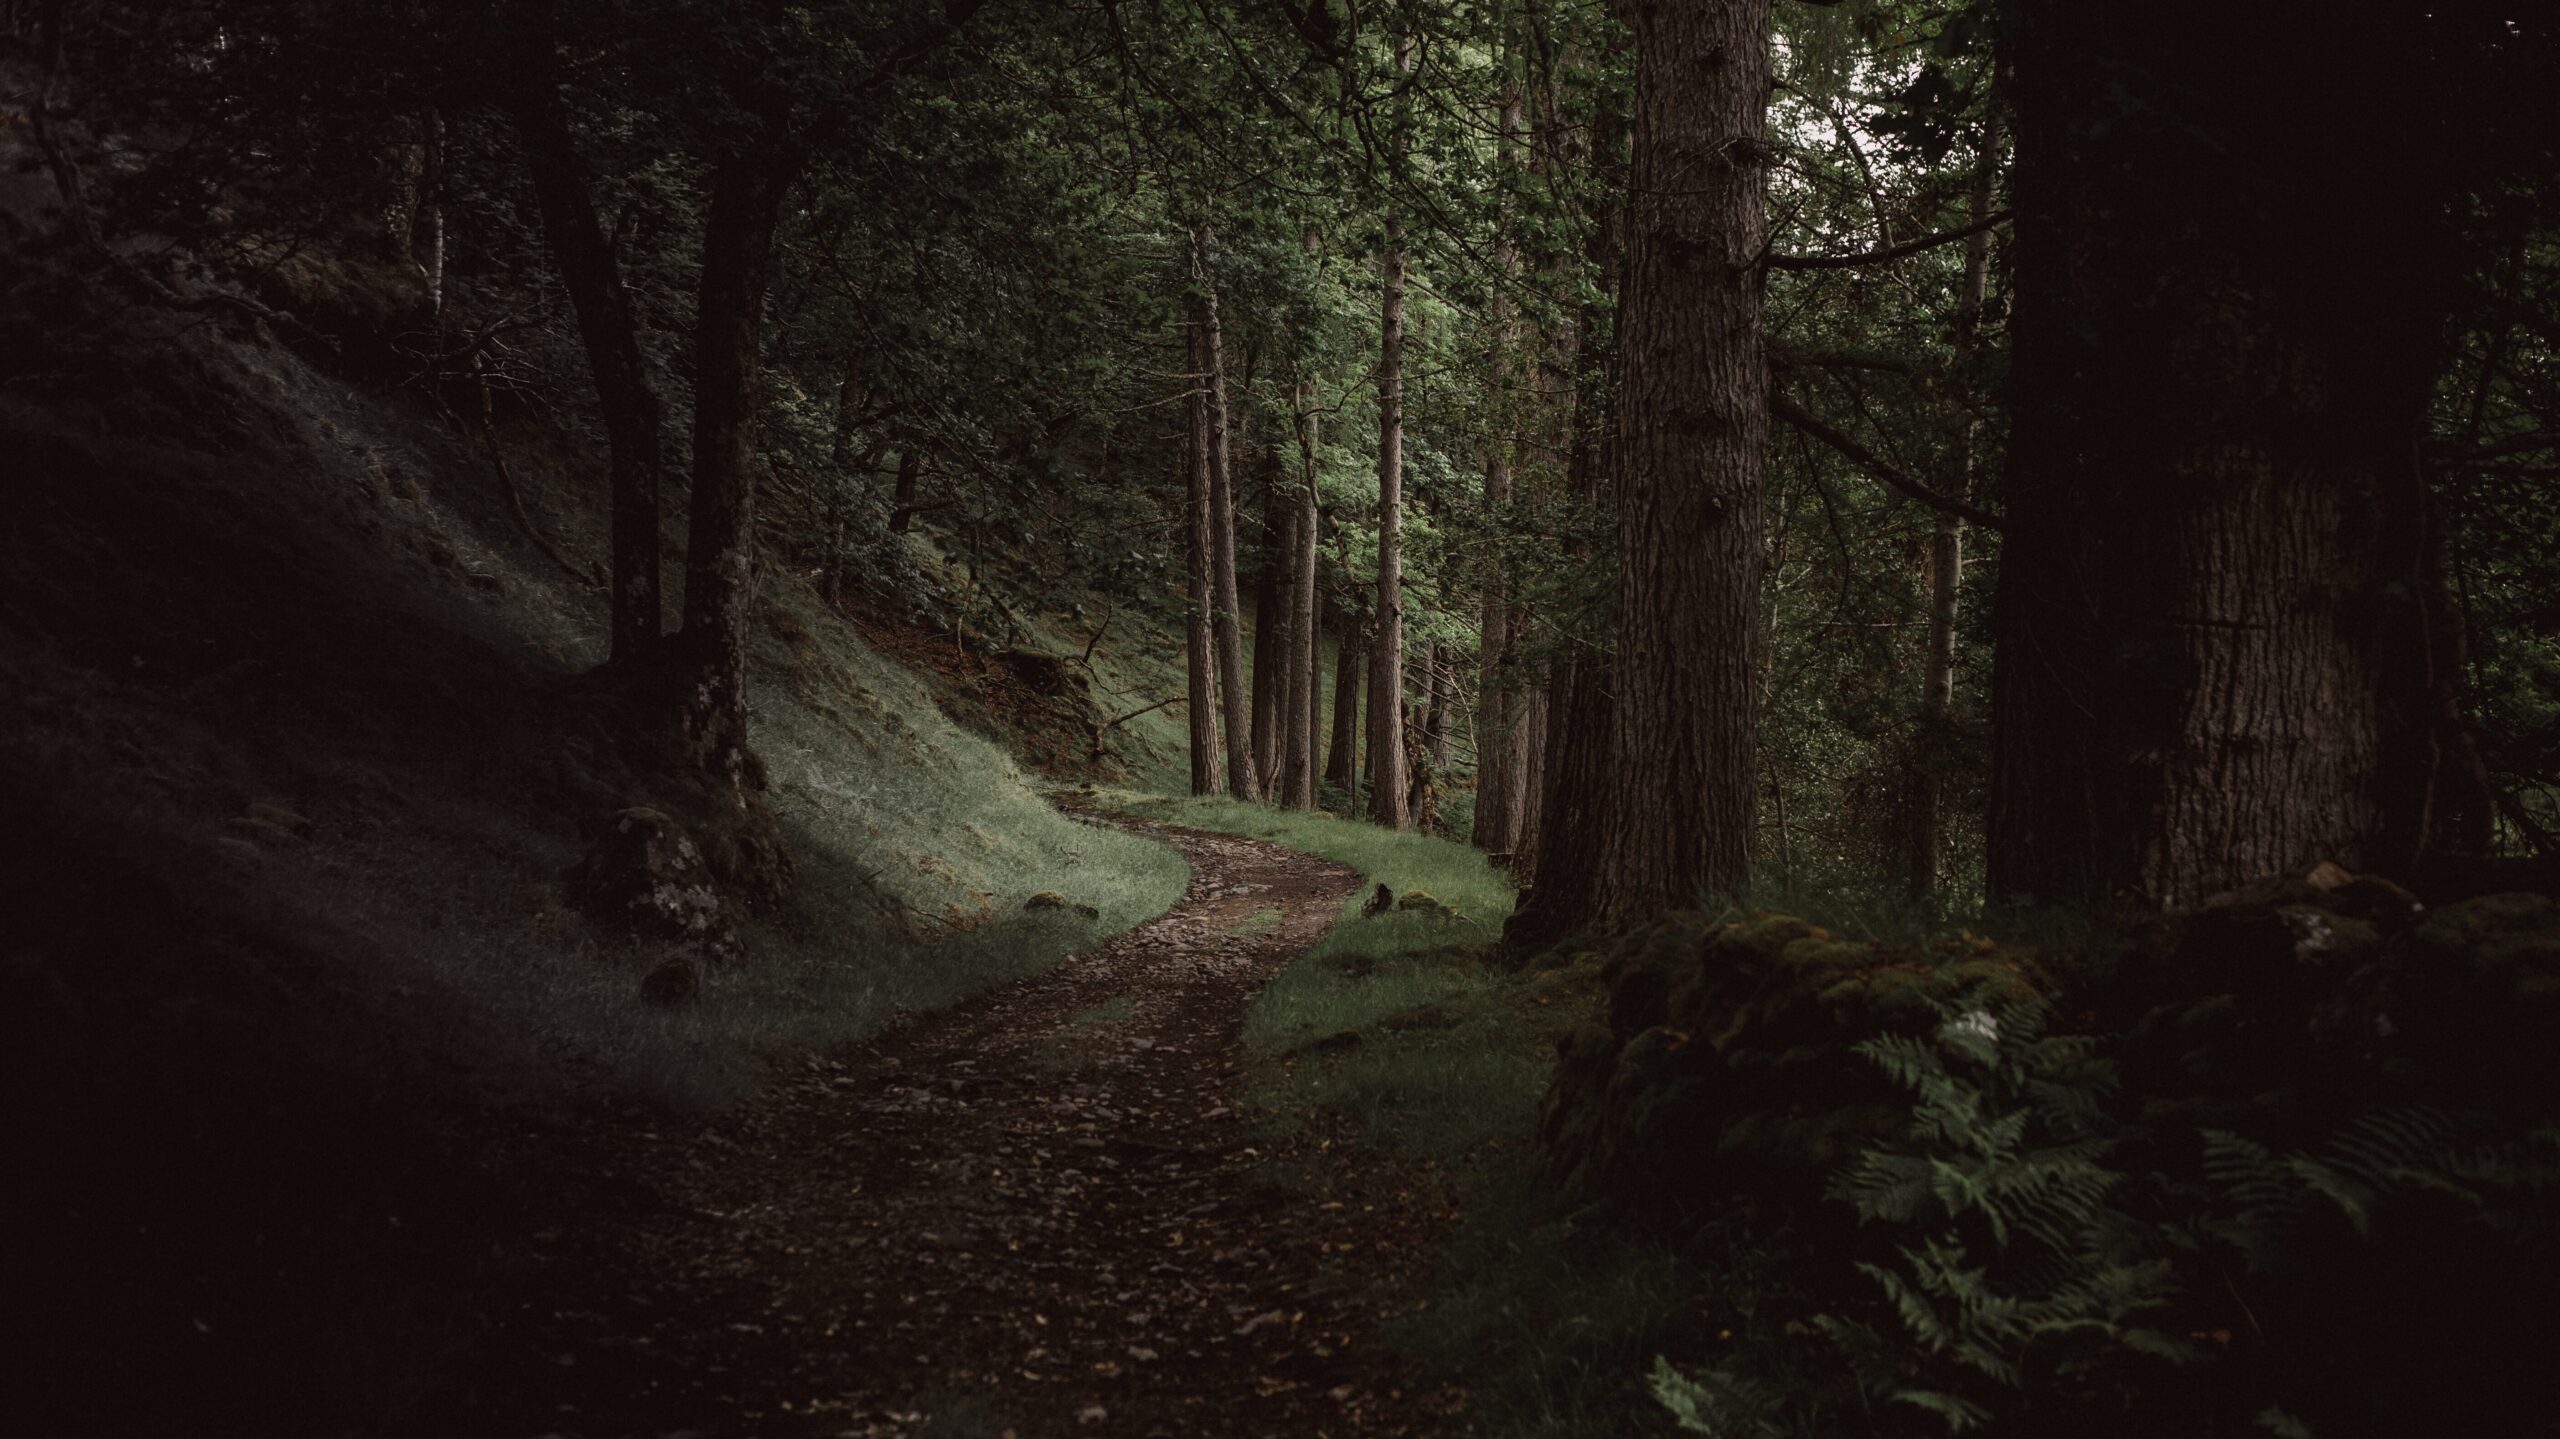 A path through a dark forest